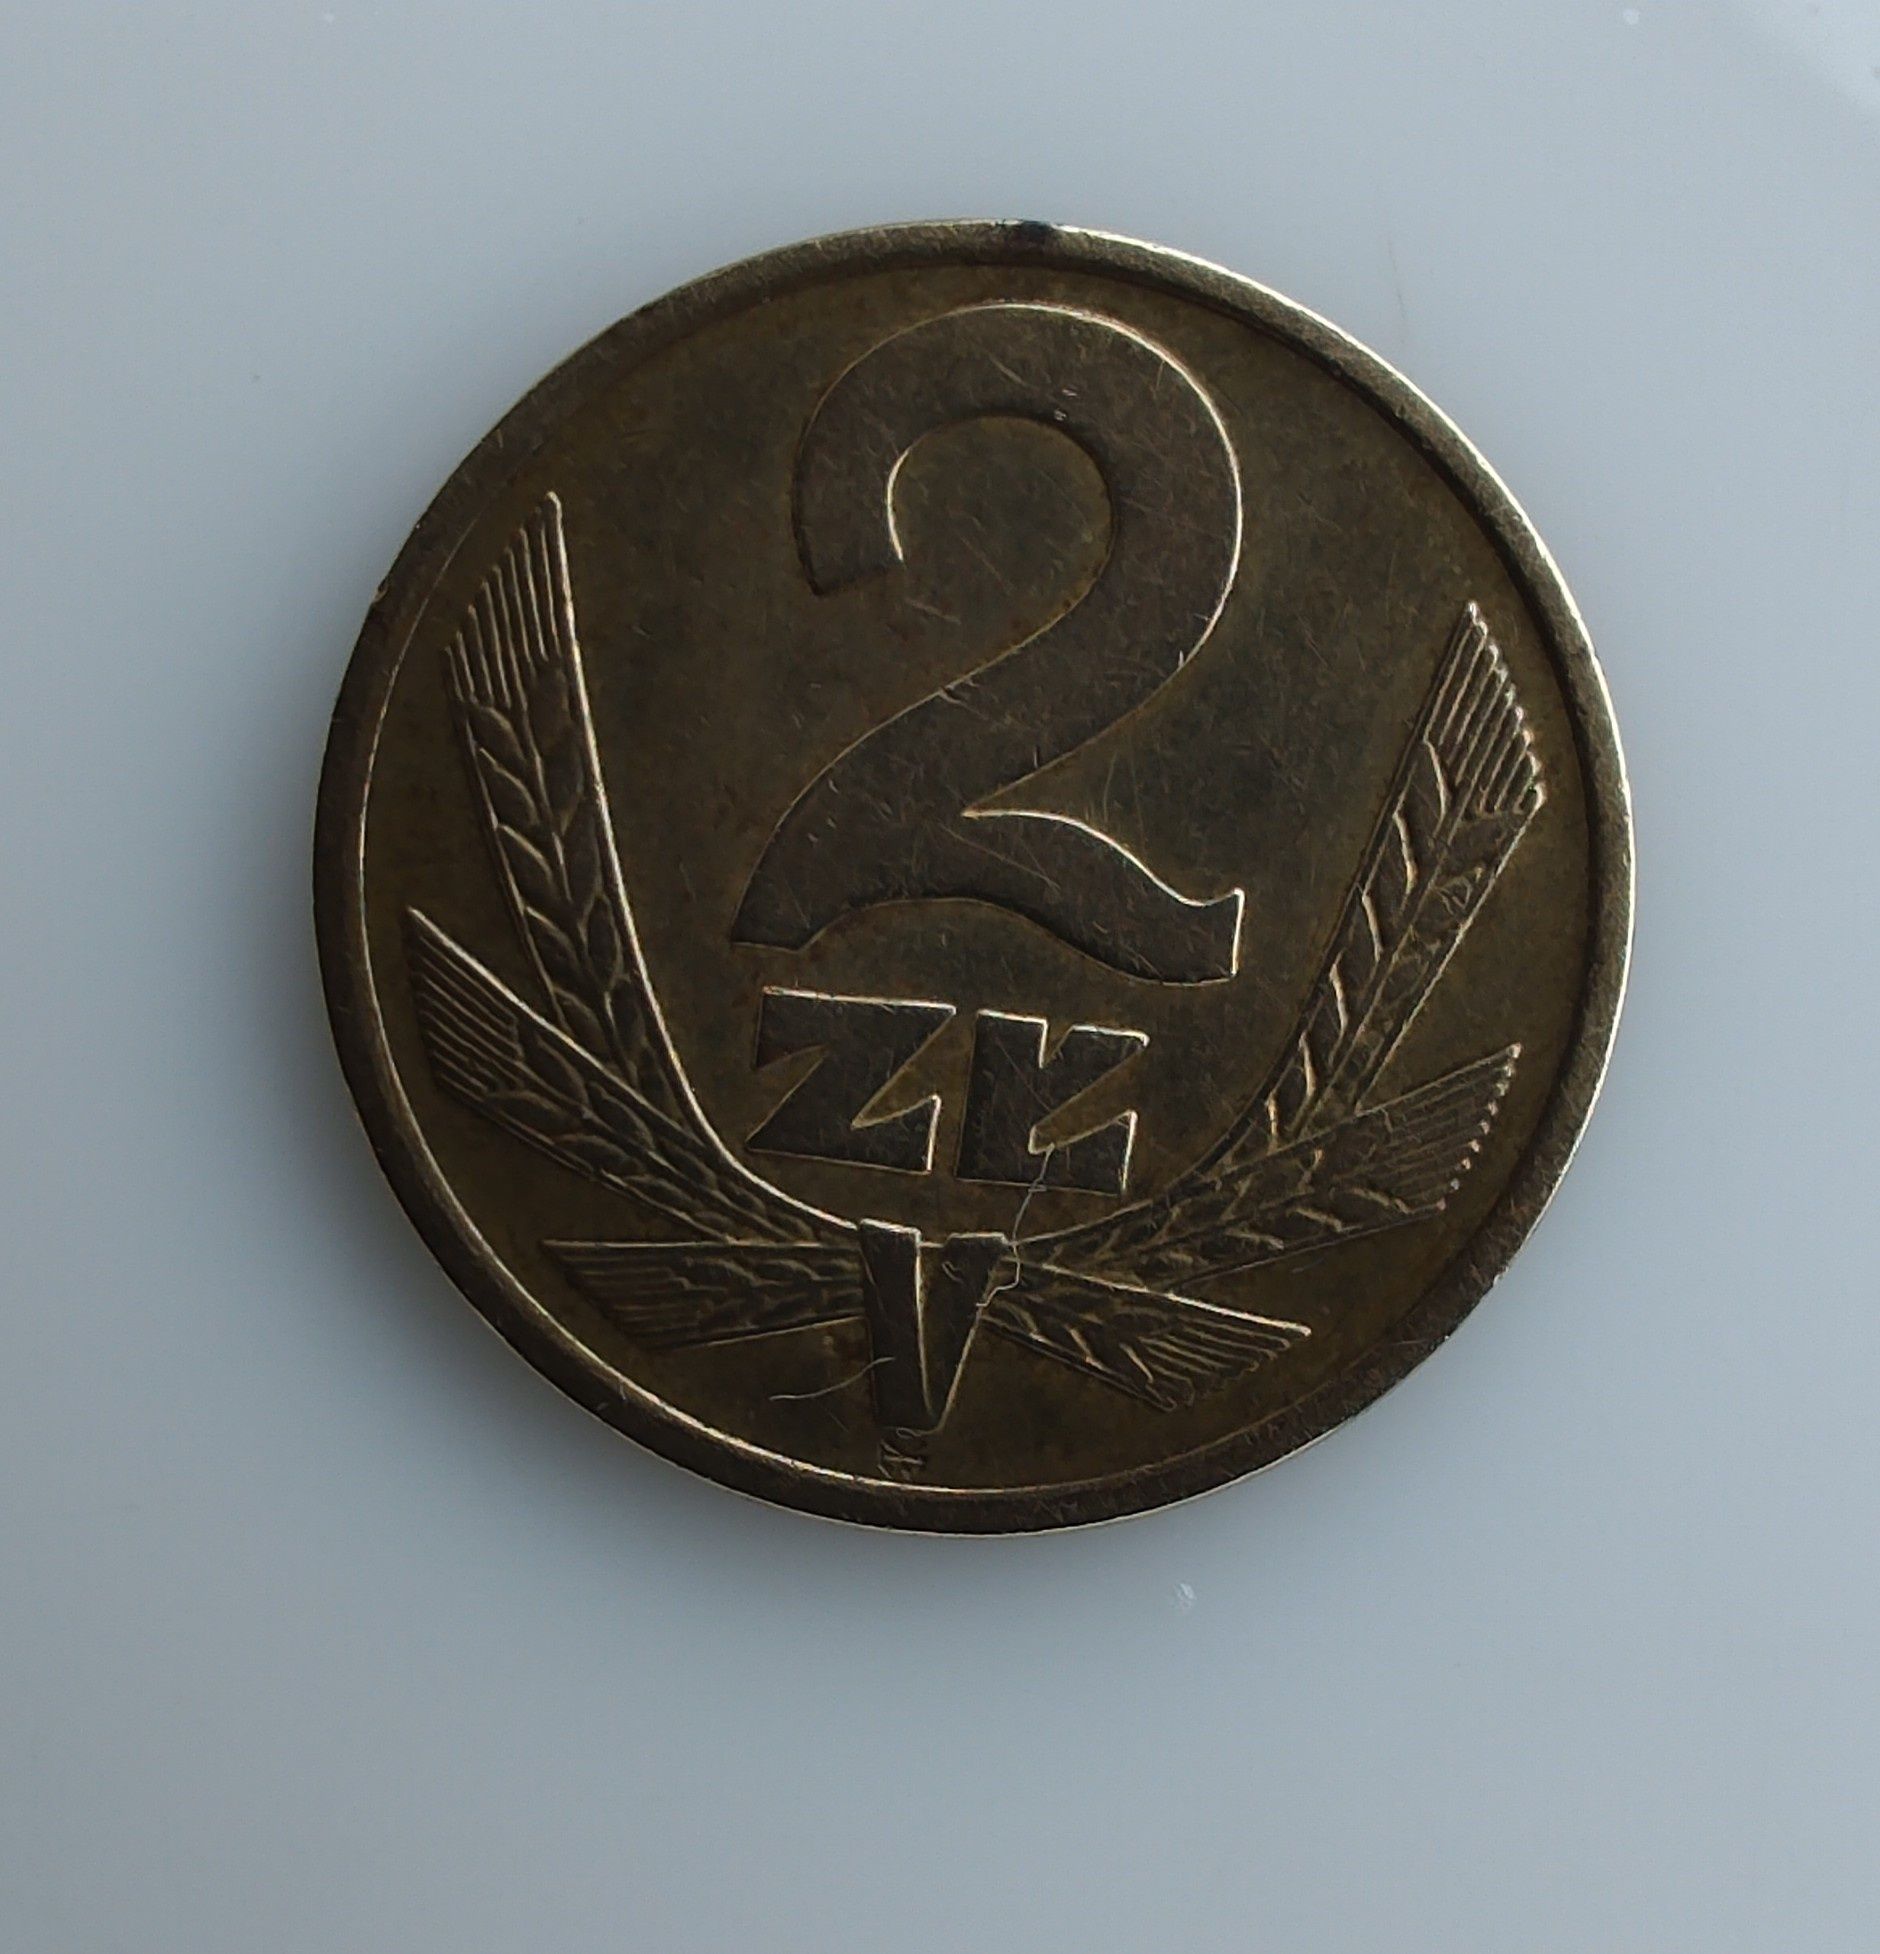 Moneta obiegowa 2 zł bez znaku mennicy 1977